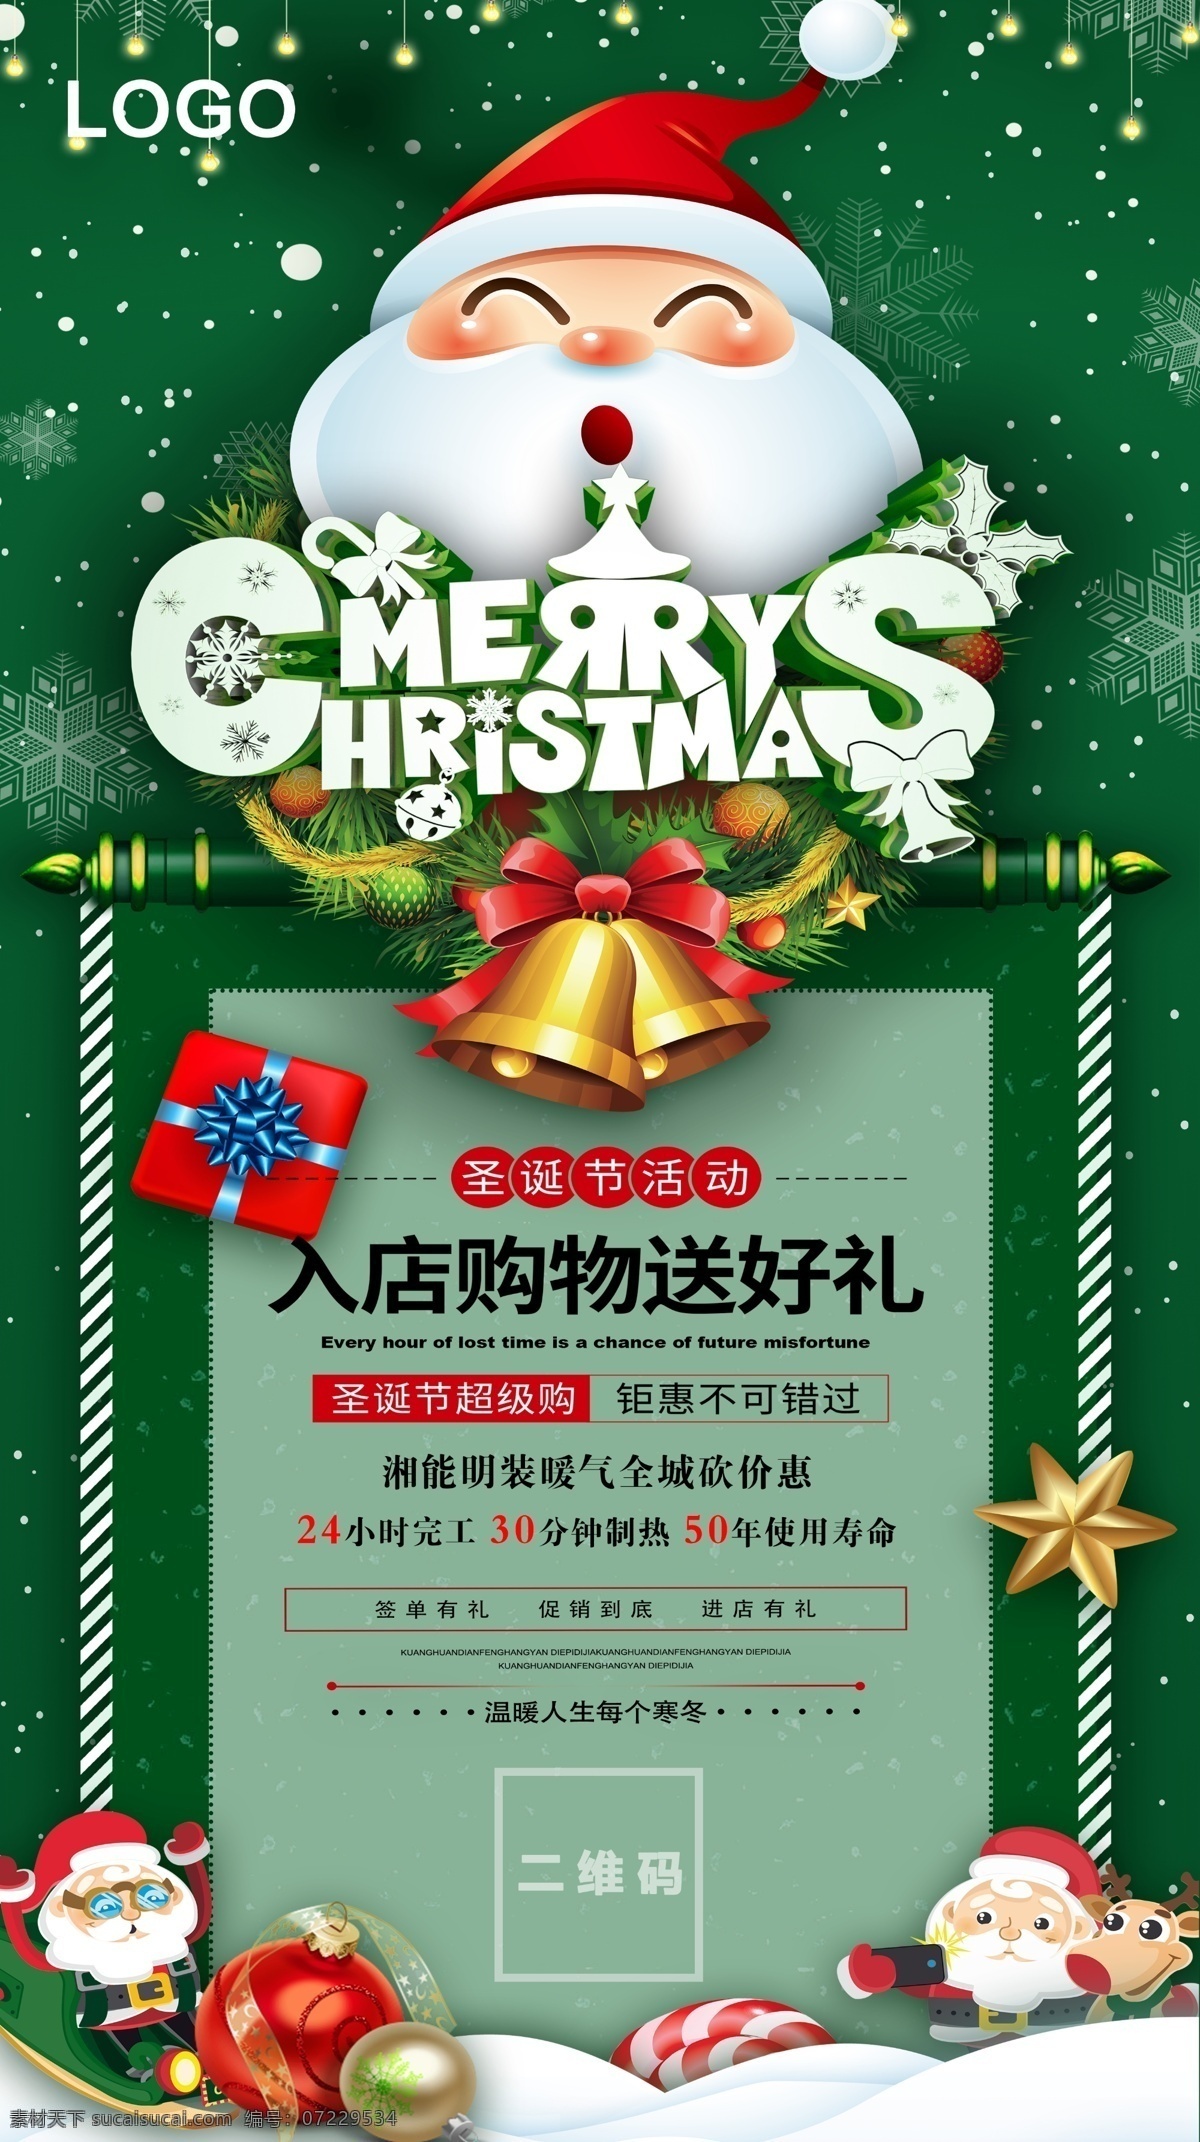 圣诞海报 促销海报 绿色铃铛 绿色 铃铛 礼物 圣诞老人 冬季 节日